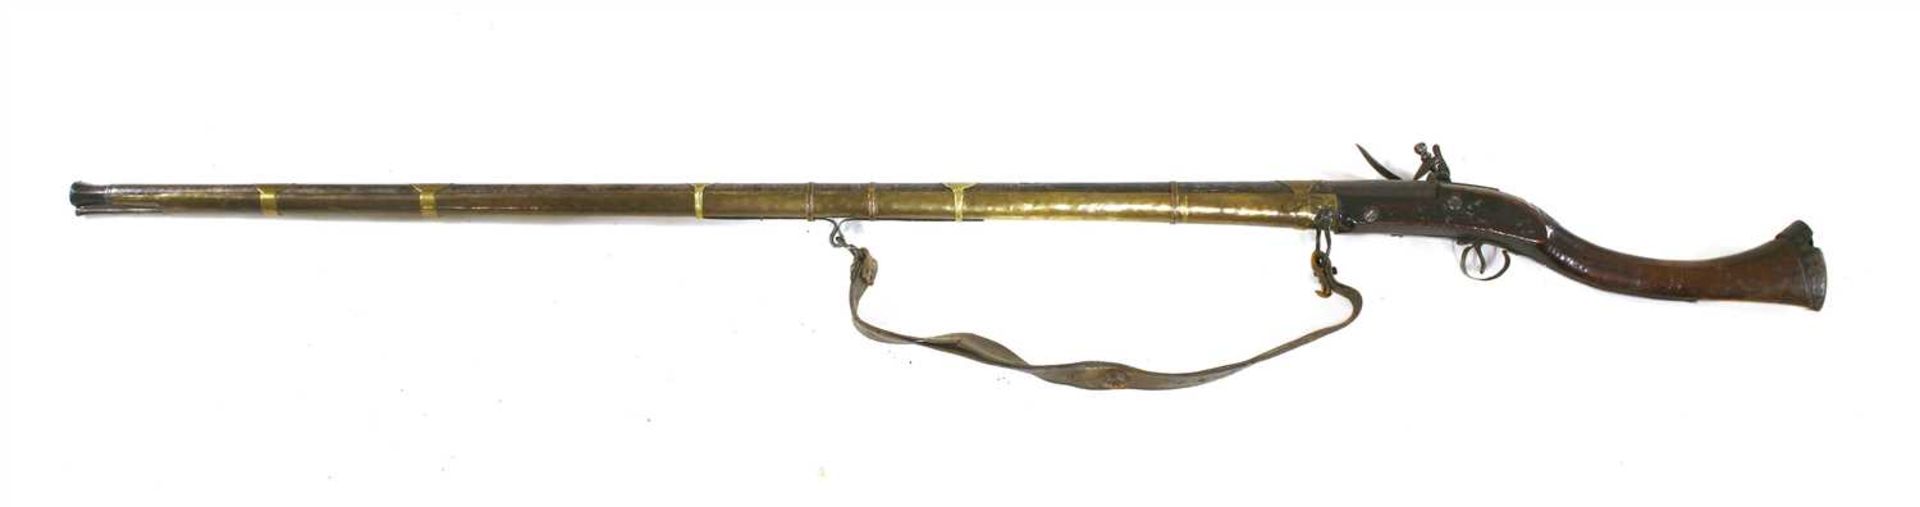 A flintlock long gun, - Image 2 of 3